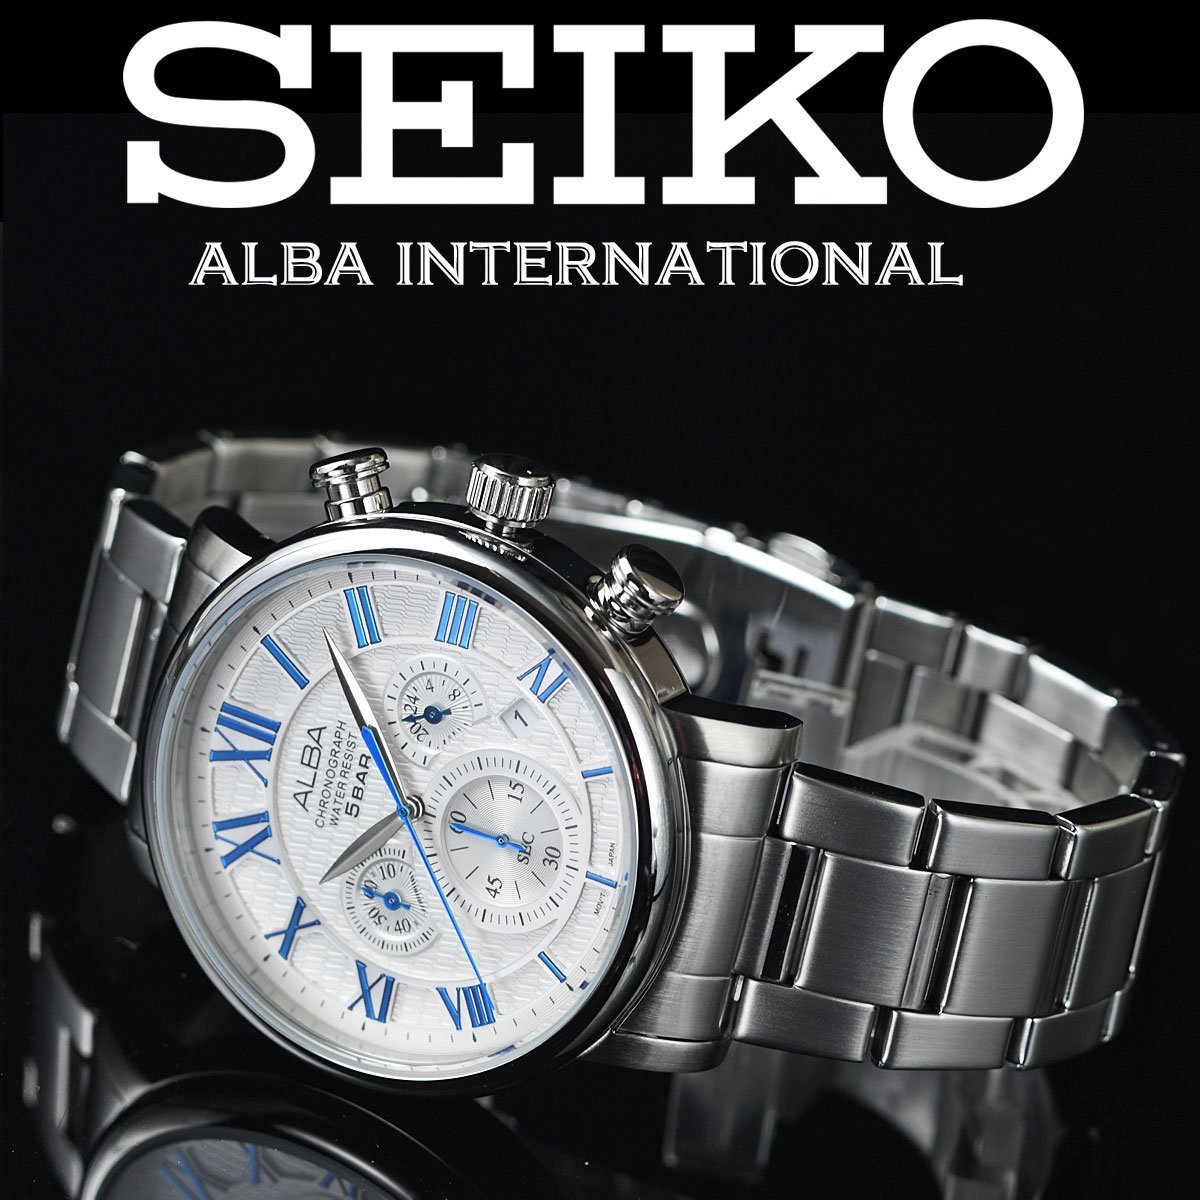 新品 セイコーALBA逆輸入モデル メタリックブルー 50m防水 クロノグラフ メンズ 激レア 入手困難アルバ 日本未発売 SEIKO 腕時計